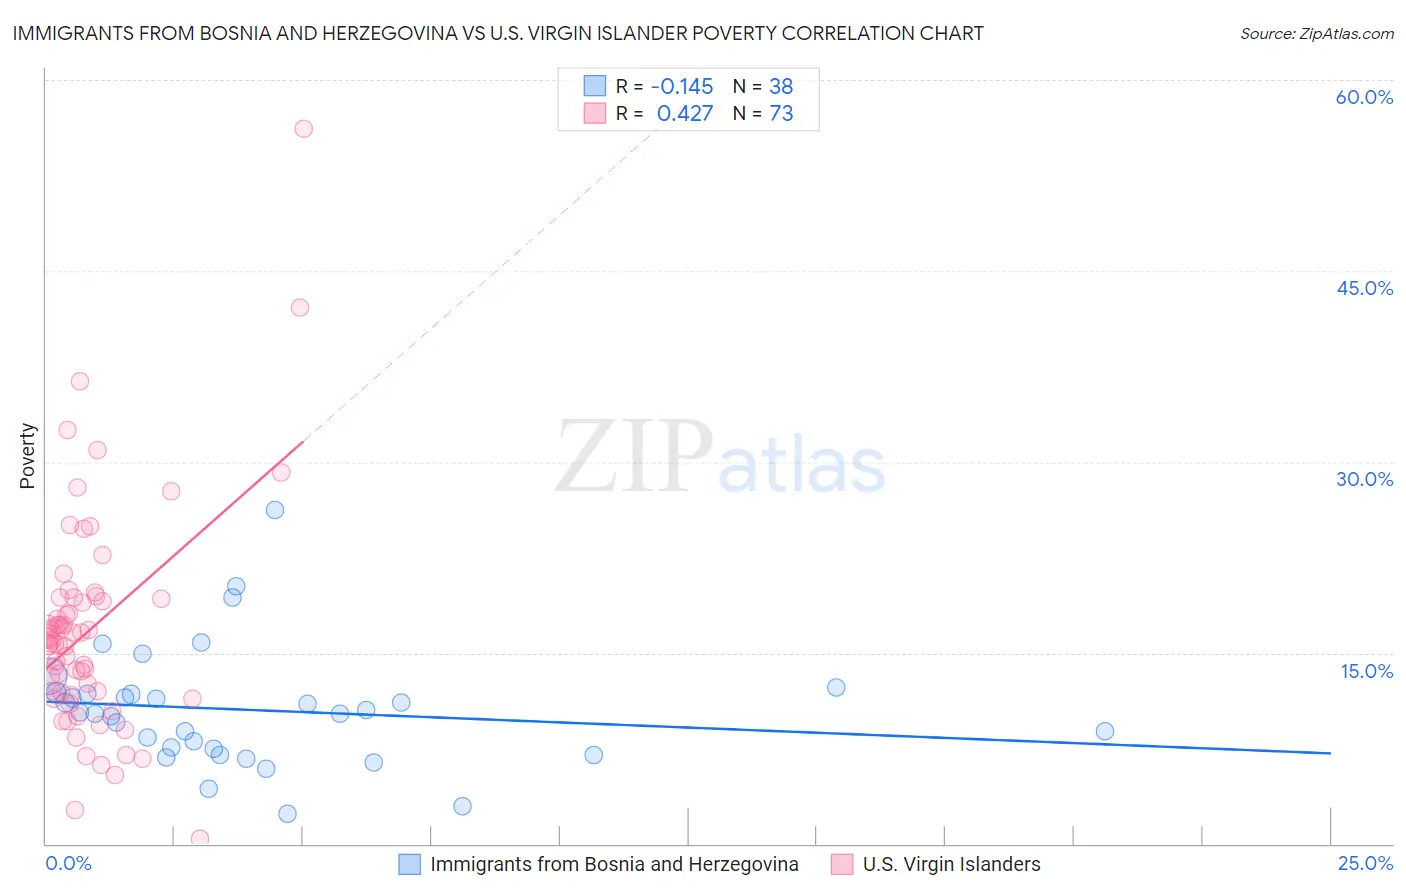 Immigrants from Bosnia and Herzegovina vs U.S. Virgin Islander Poverty